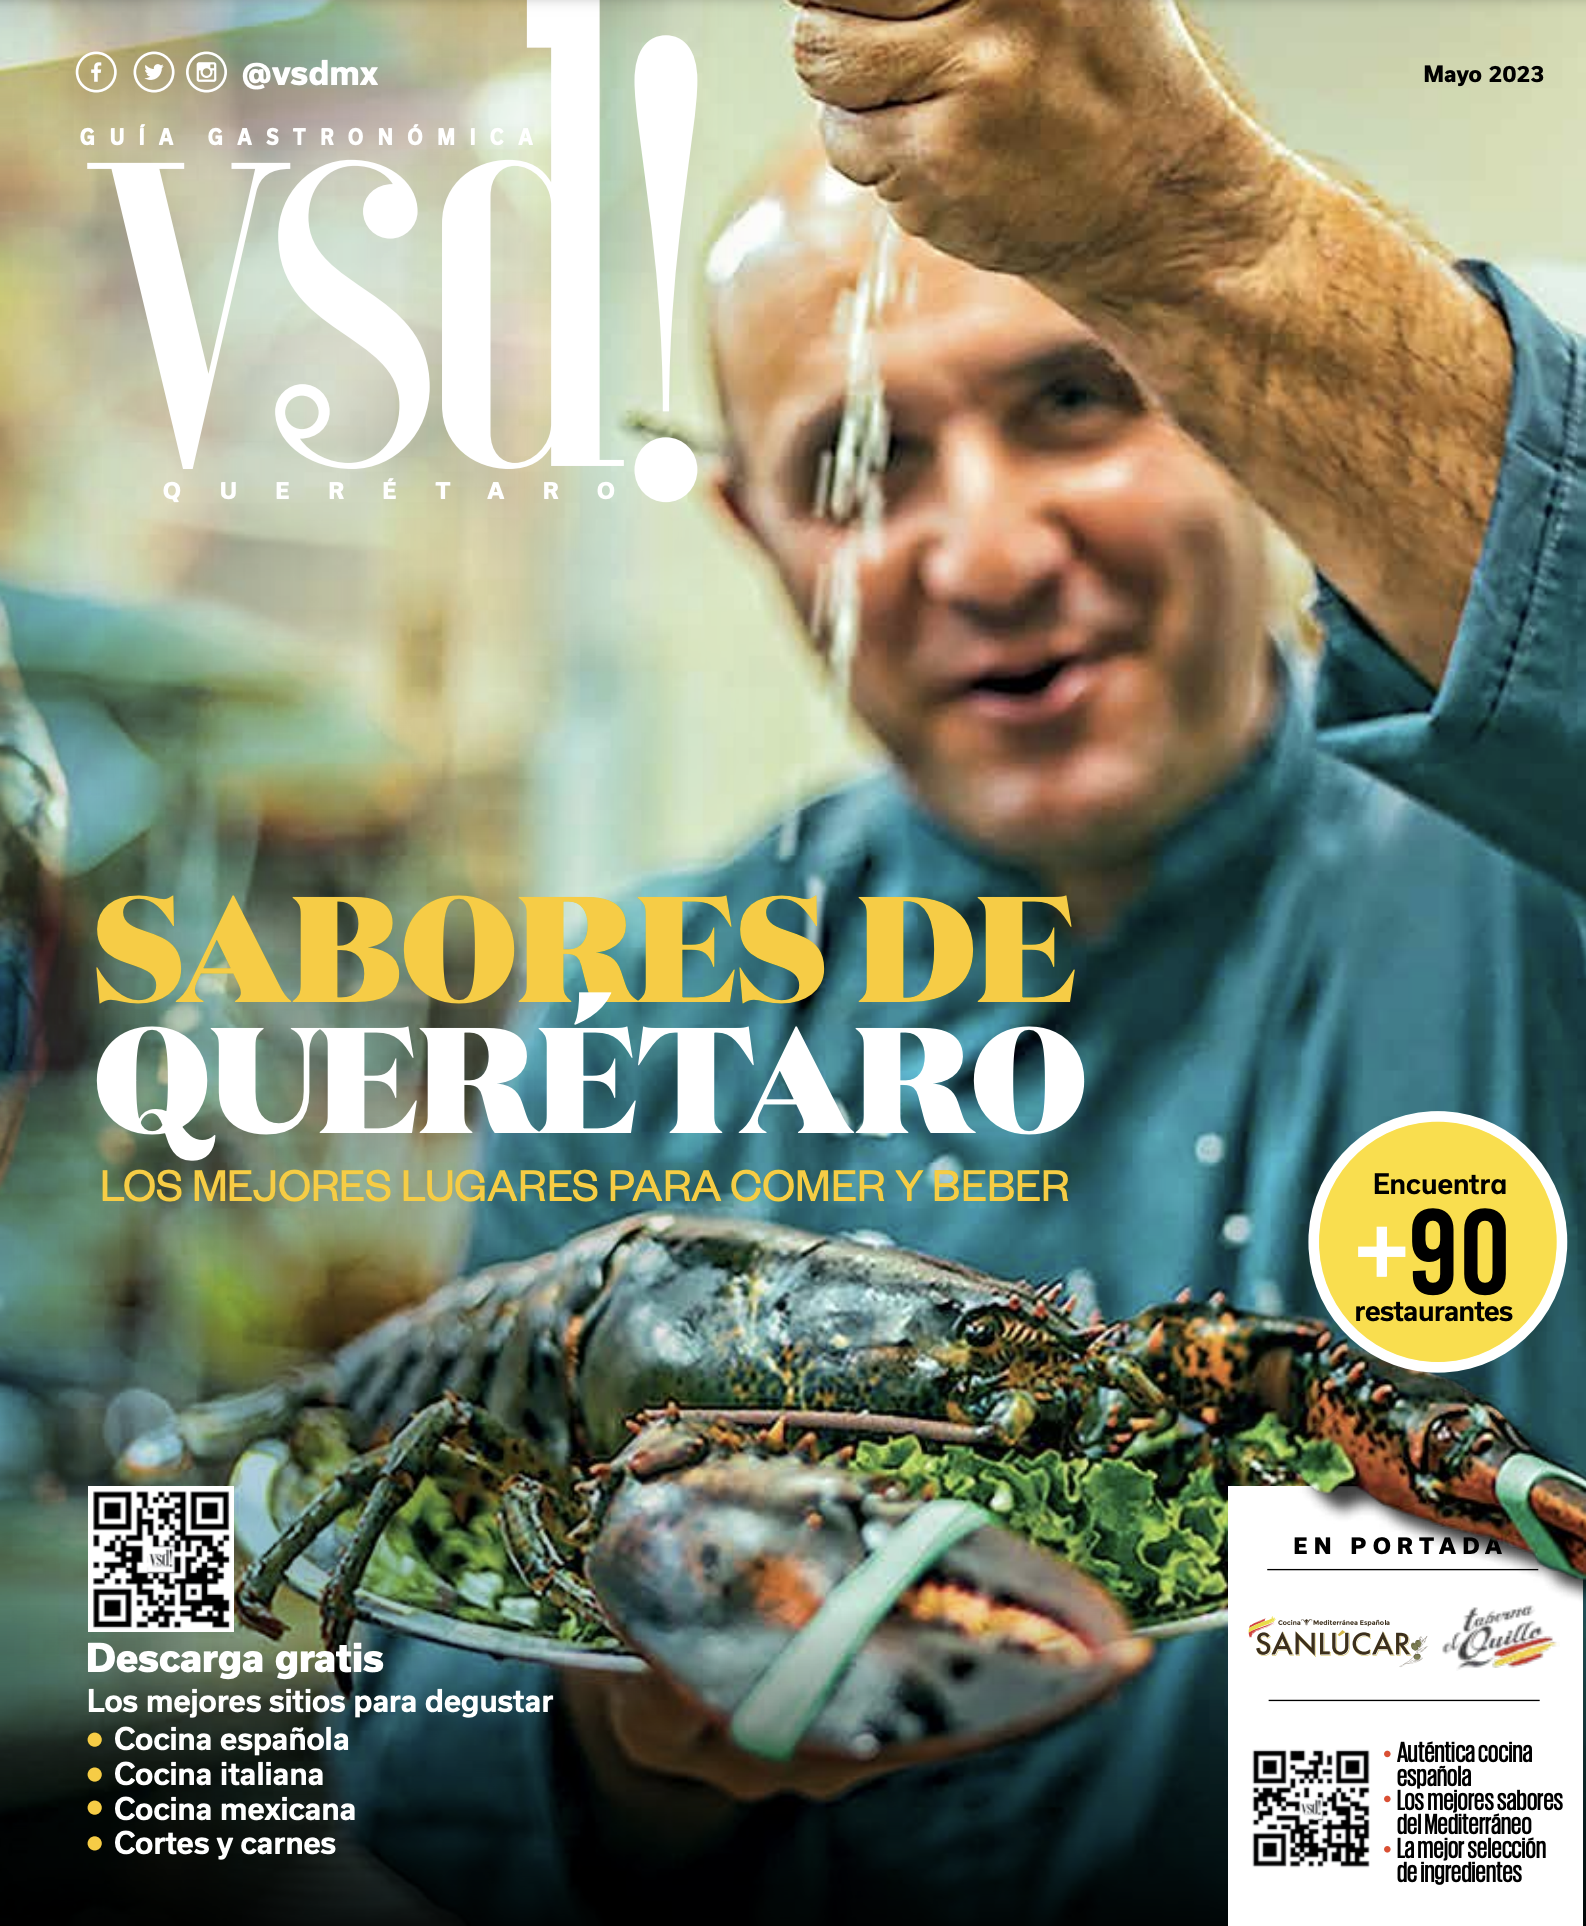 Sabores de Querétaro 2023, la Guía Gastronómica